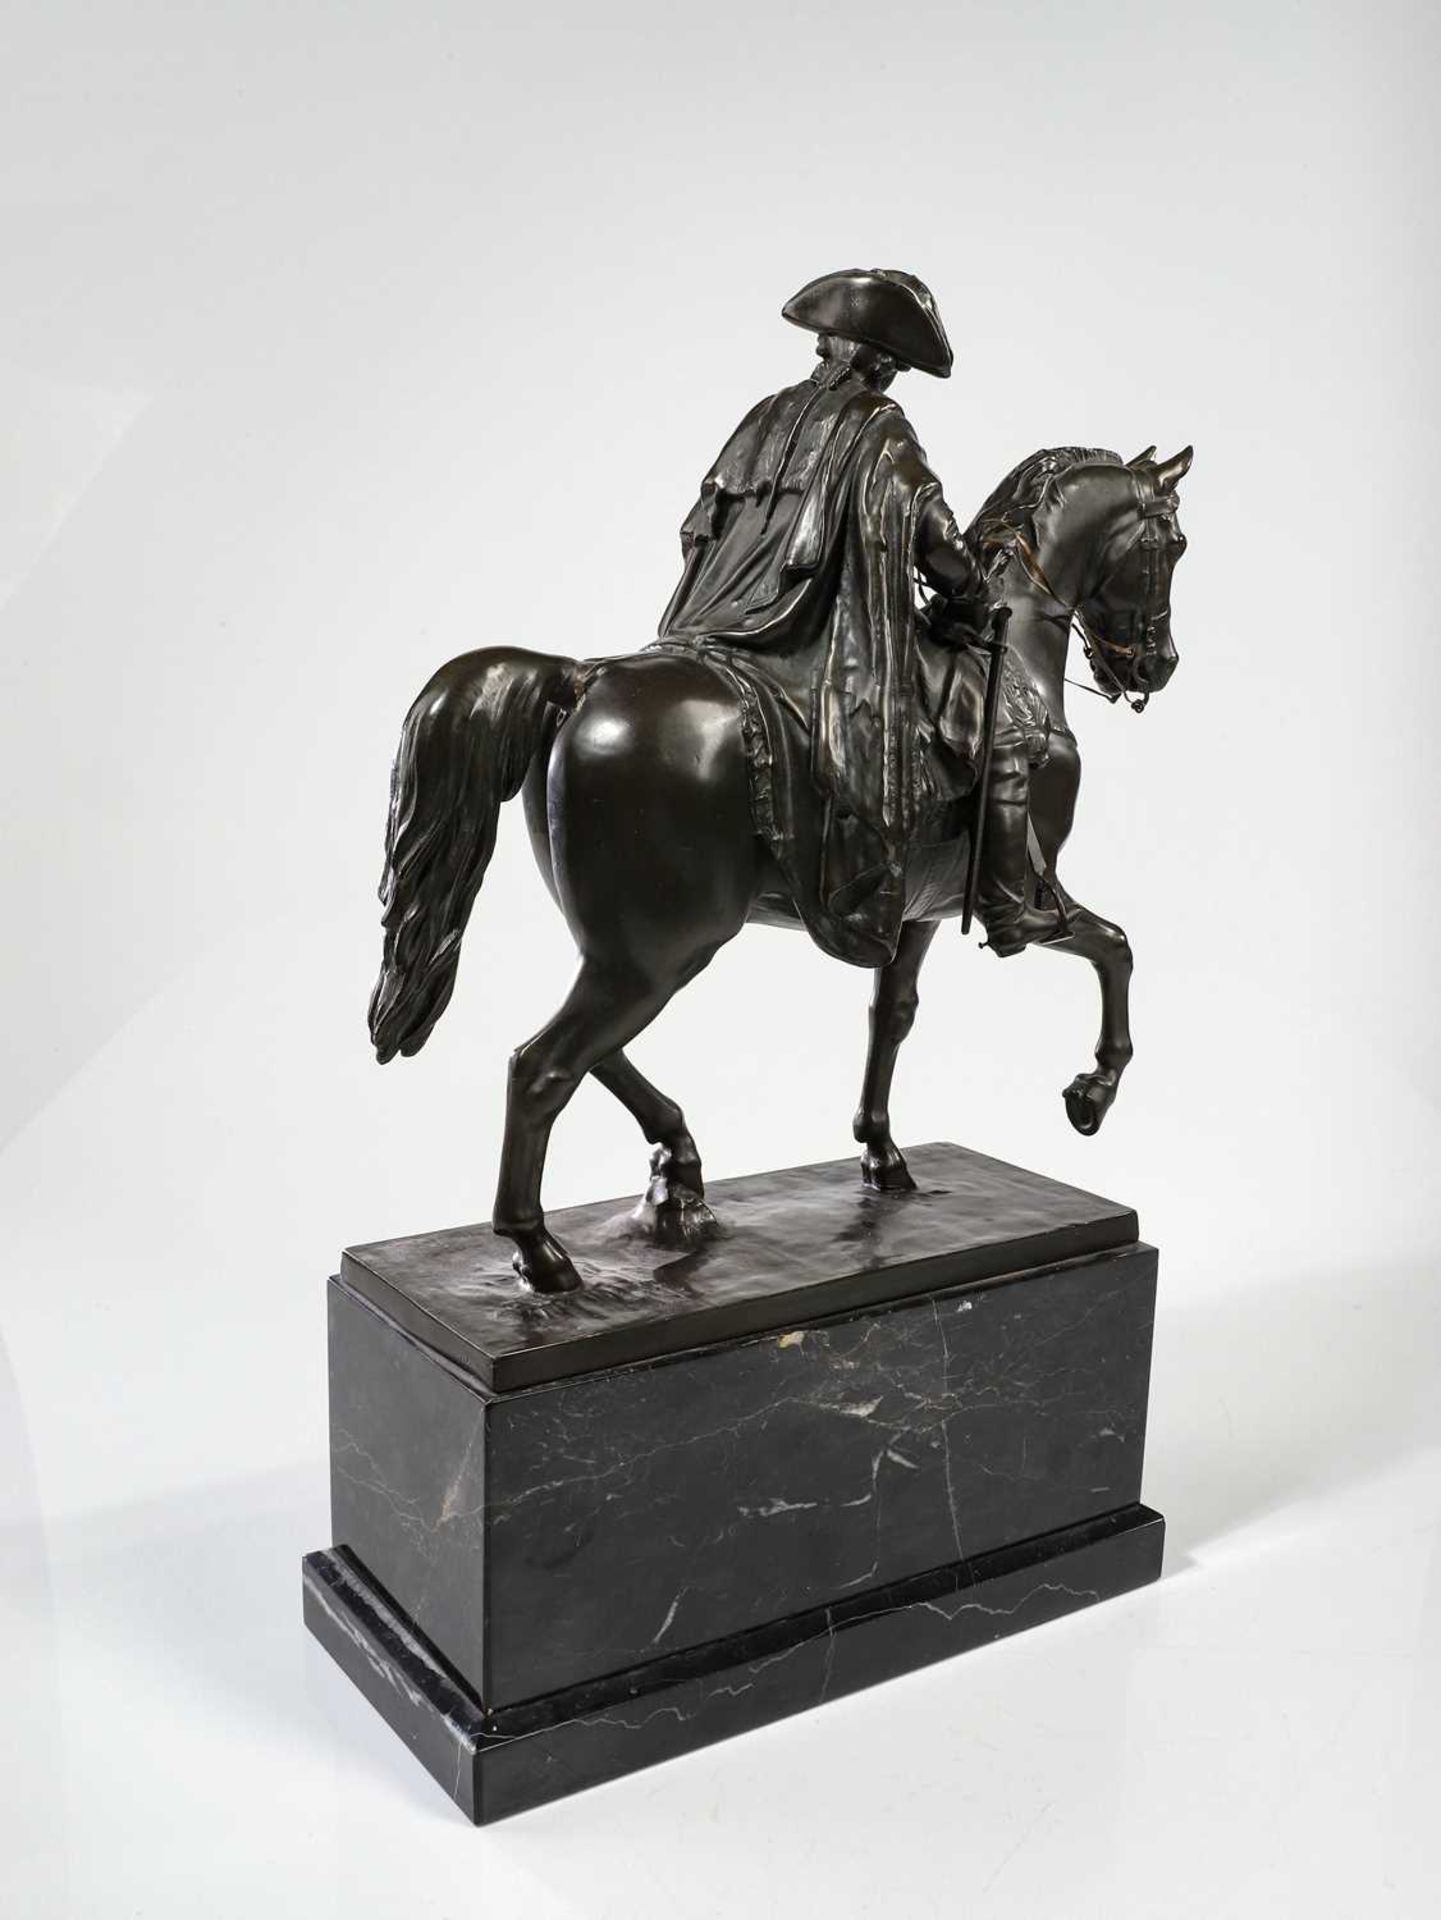 Skulptur von "Friedrich der Große" - Image 6 of 27